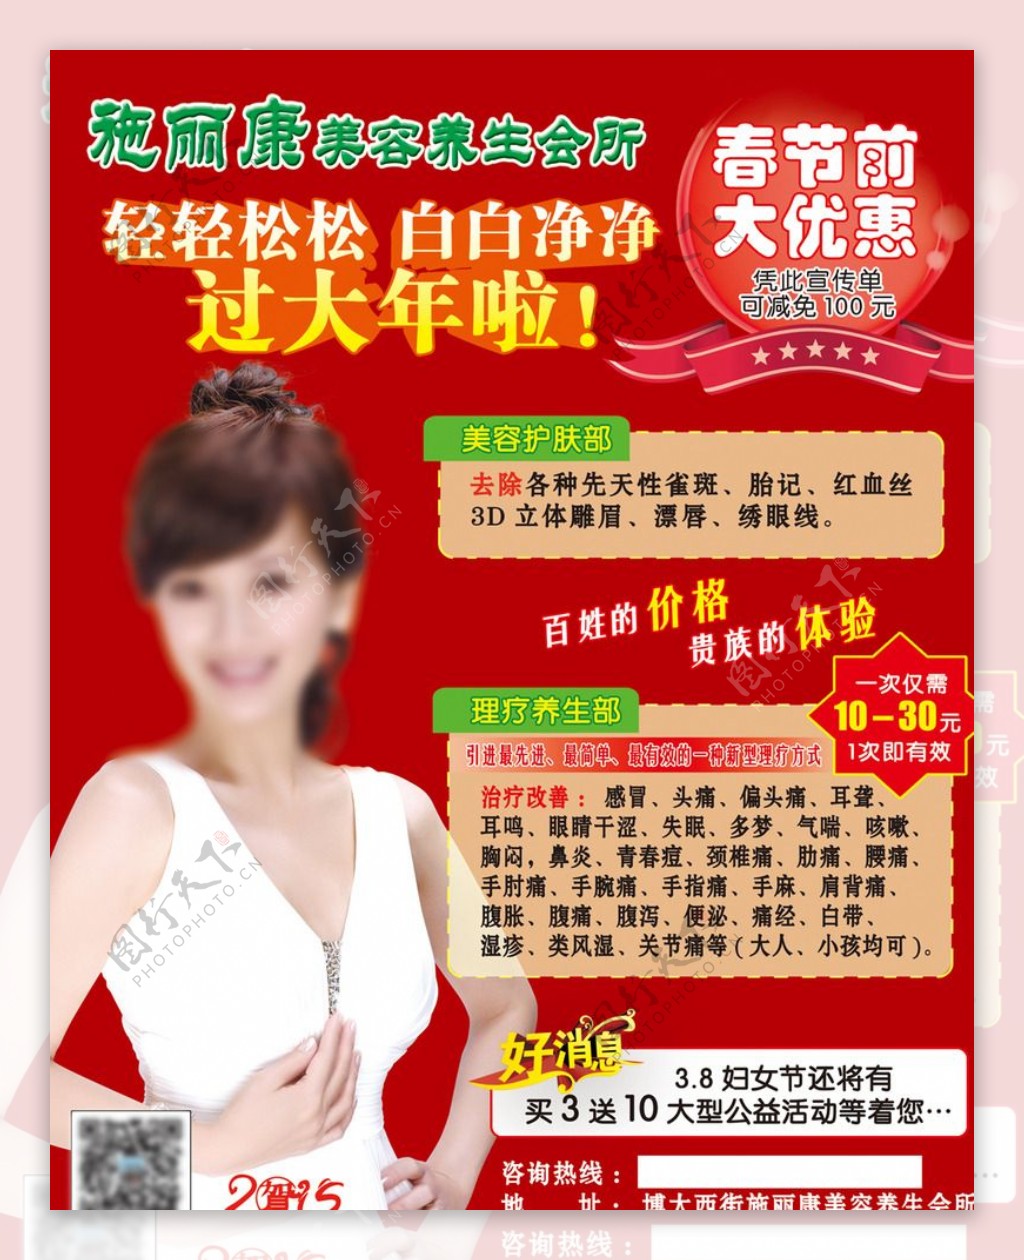 施丽康春节前优惠宣传广告图片